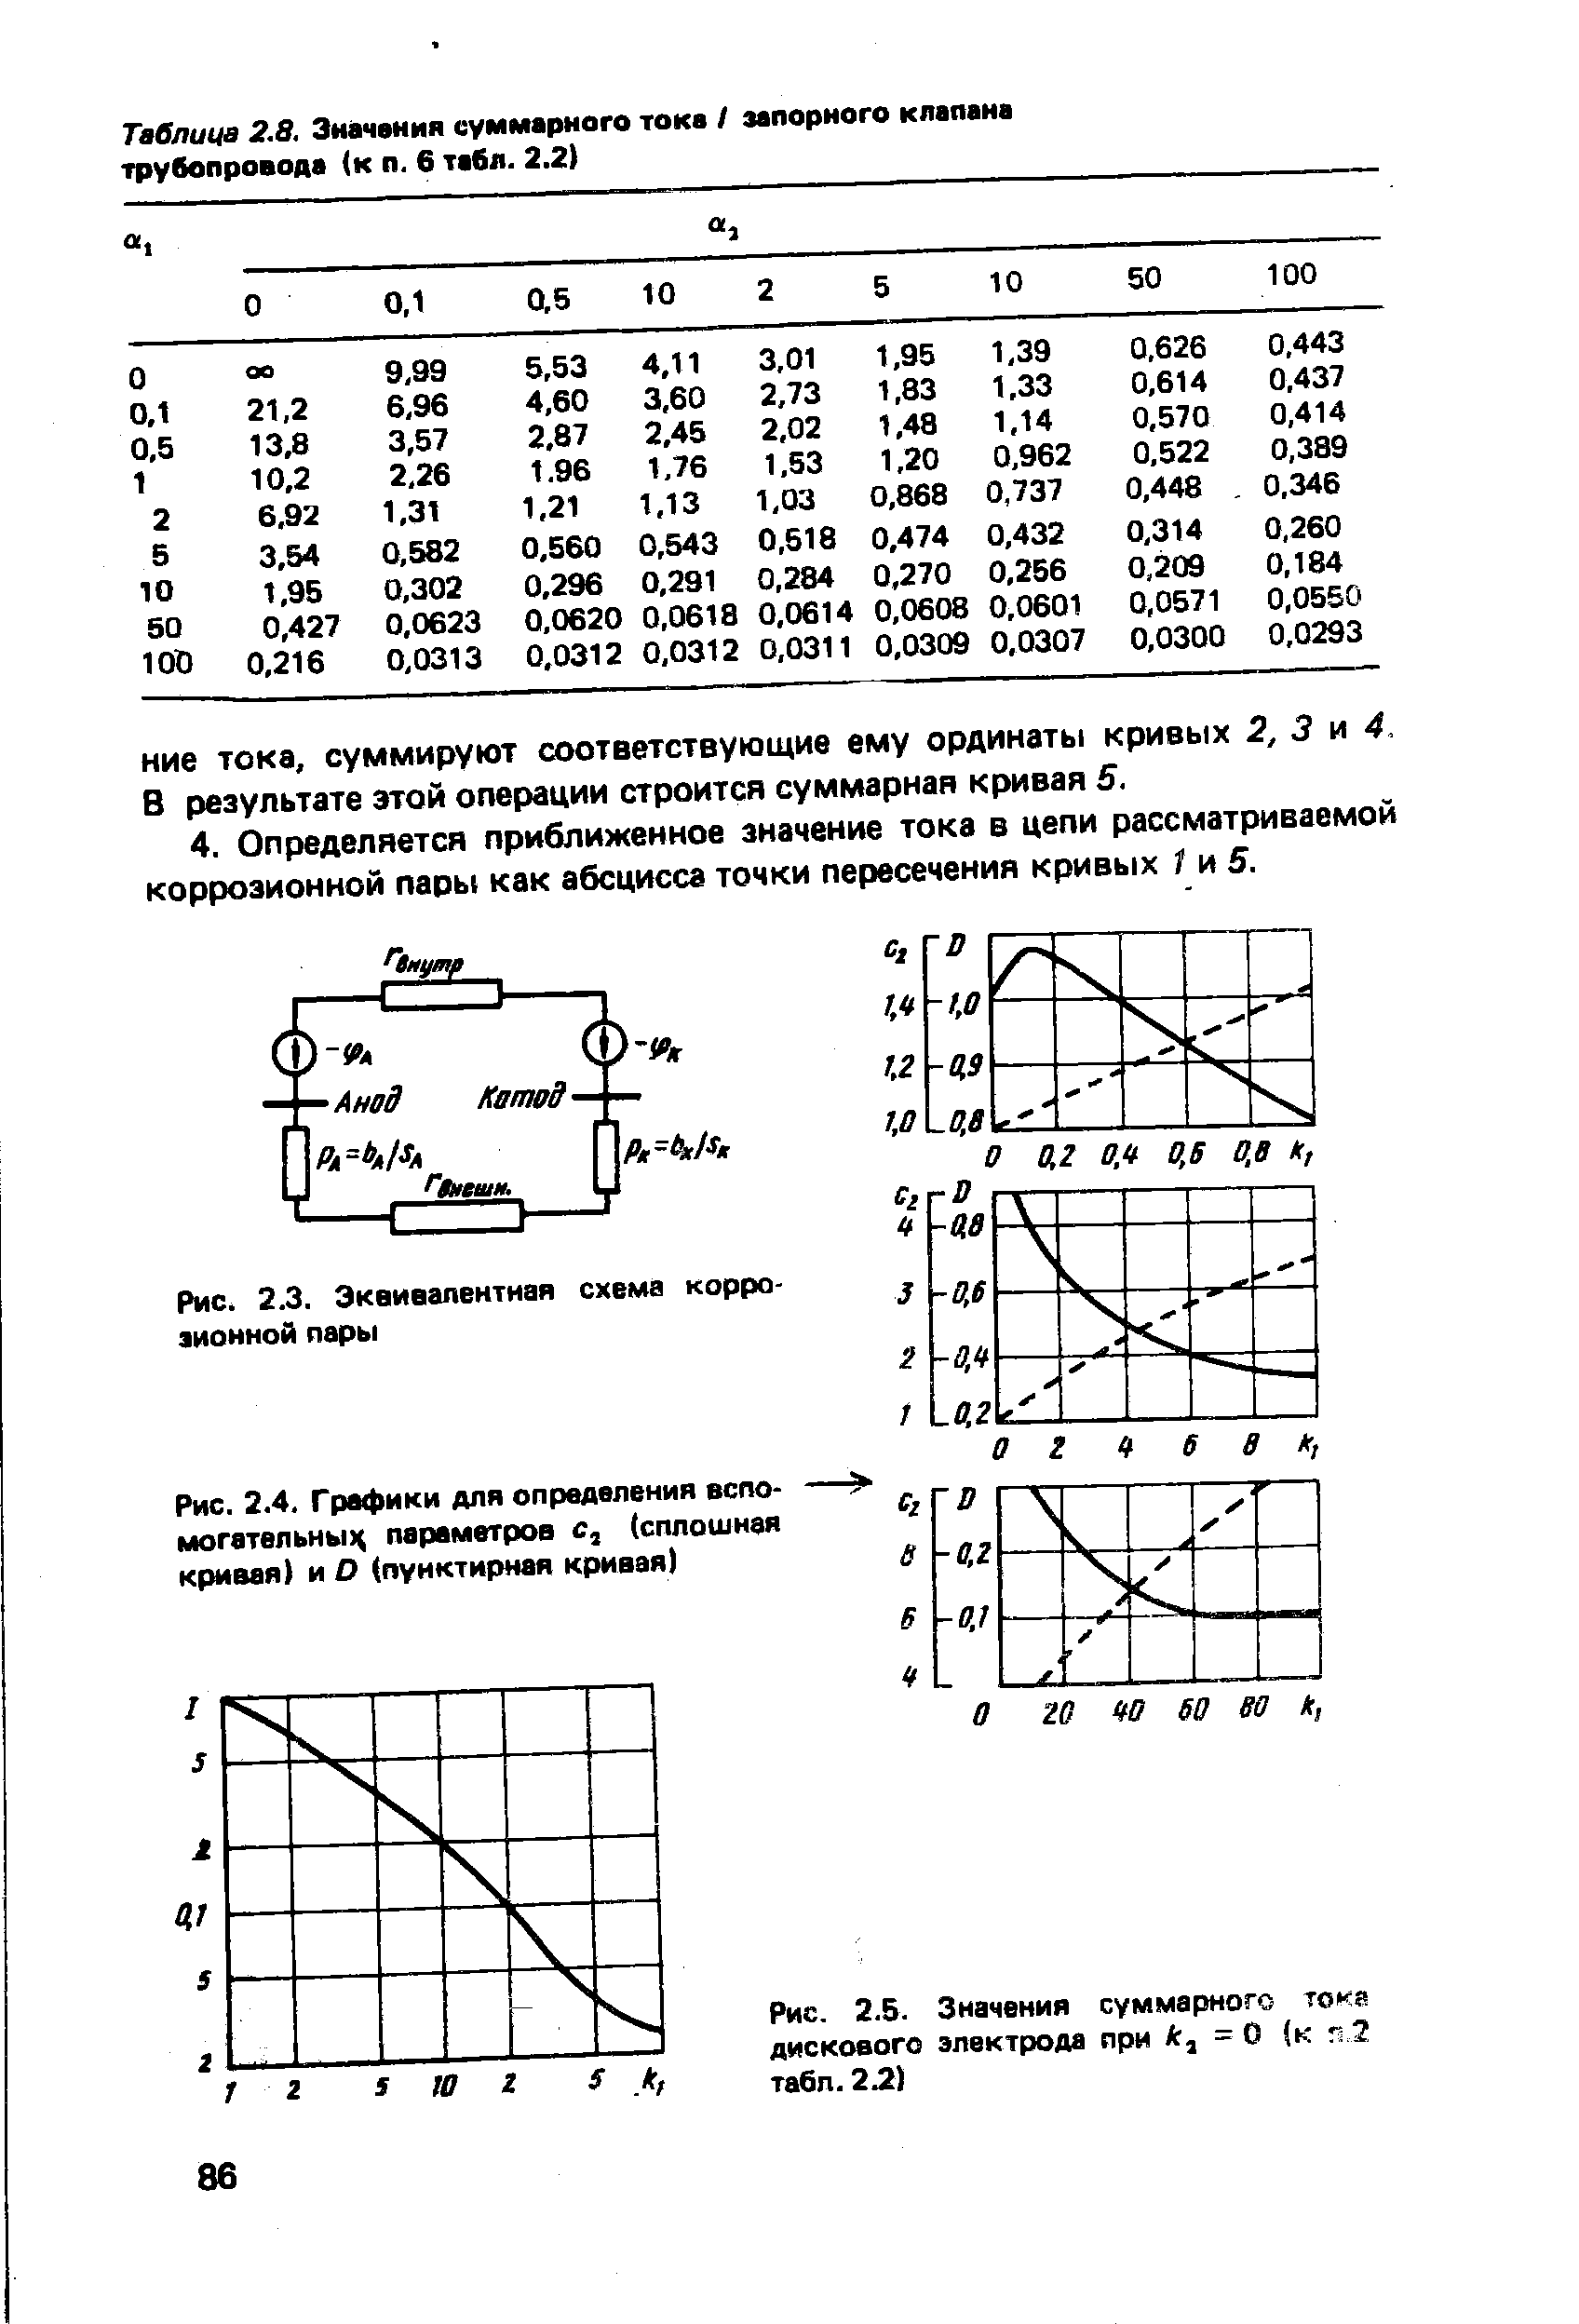 Рис. 2.5. Значения суммарного тока дискового электрода при Аг, = О (к г< 2 табп. 2.2)
